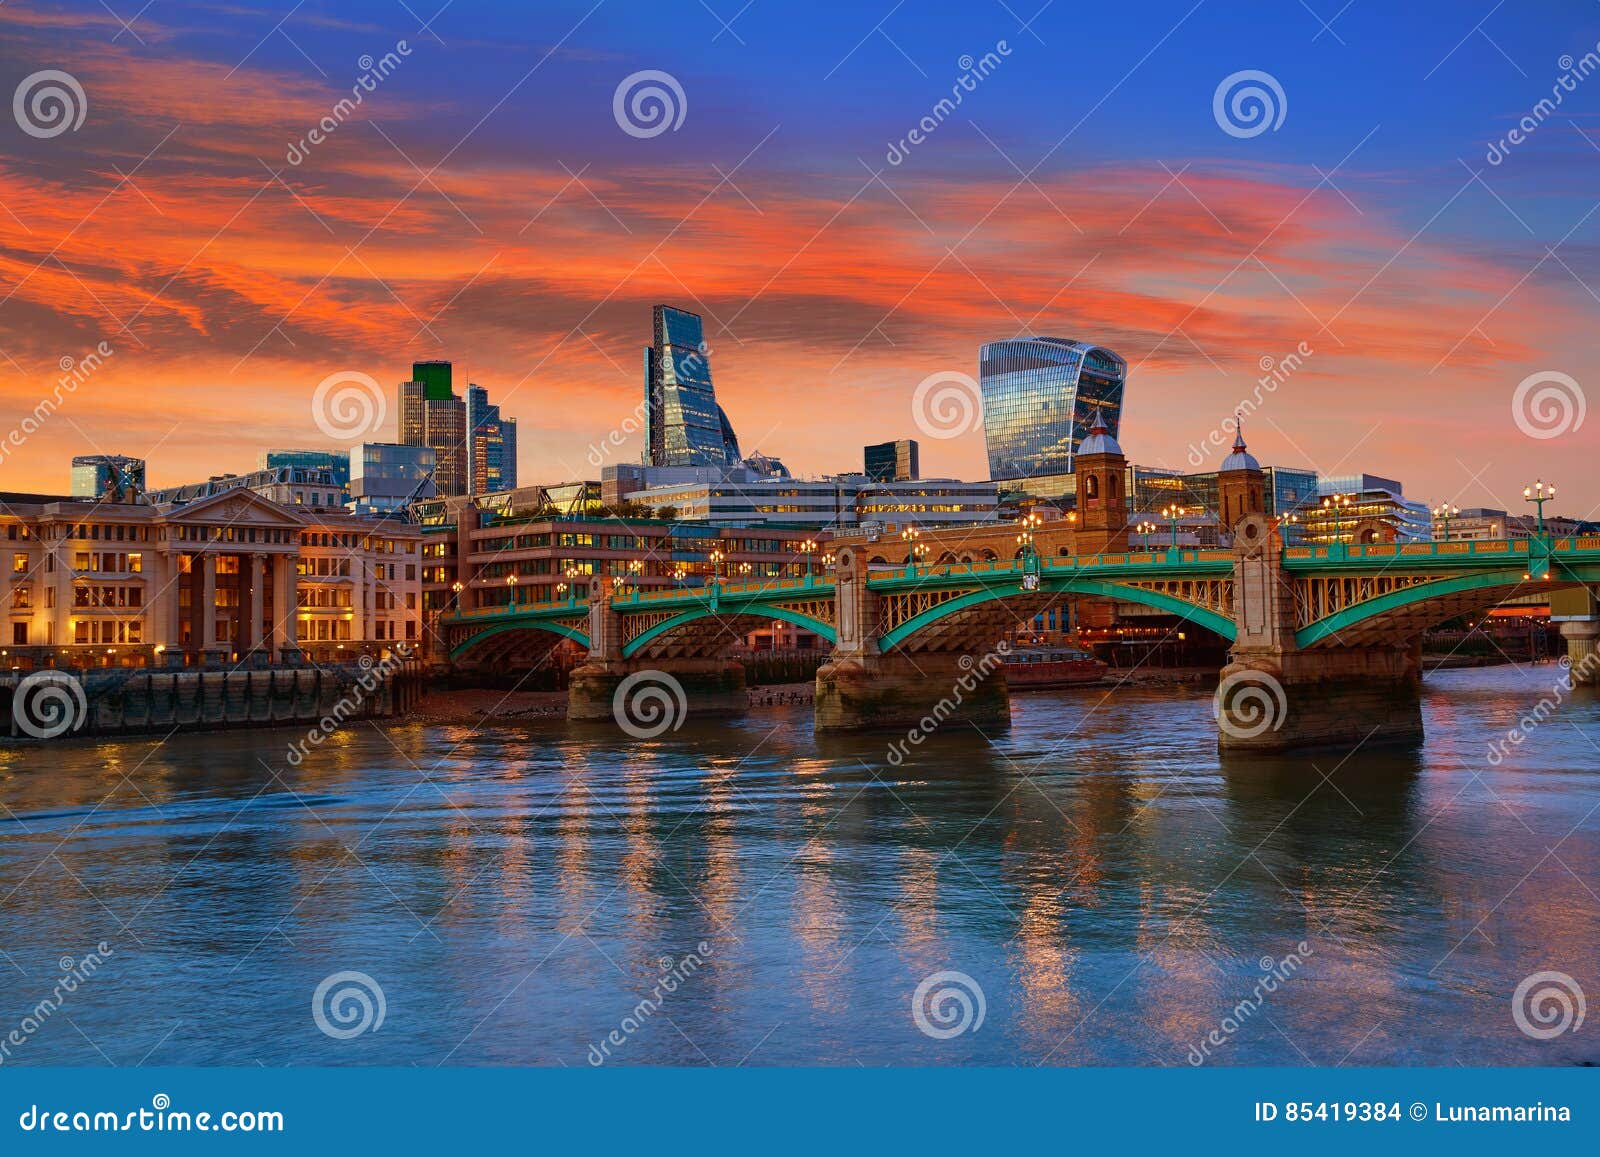 london skyline sunset southwark bridge uk